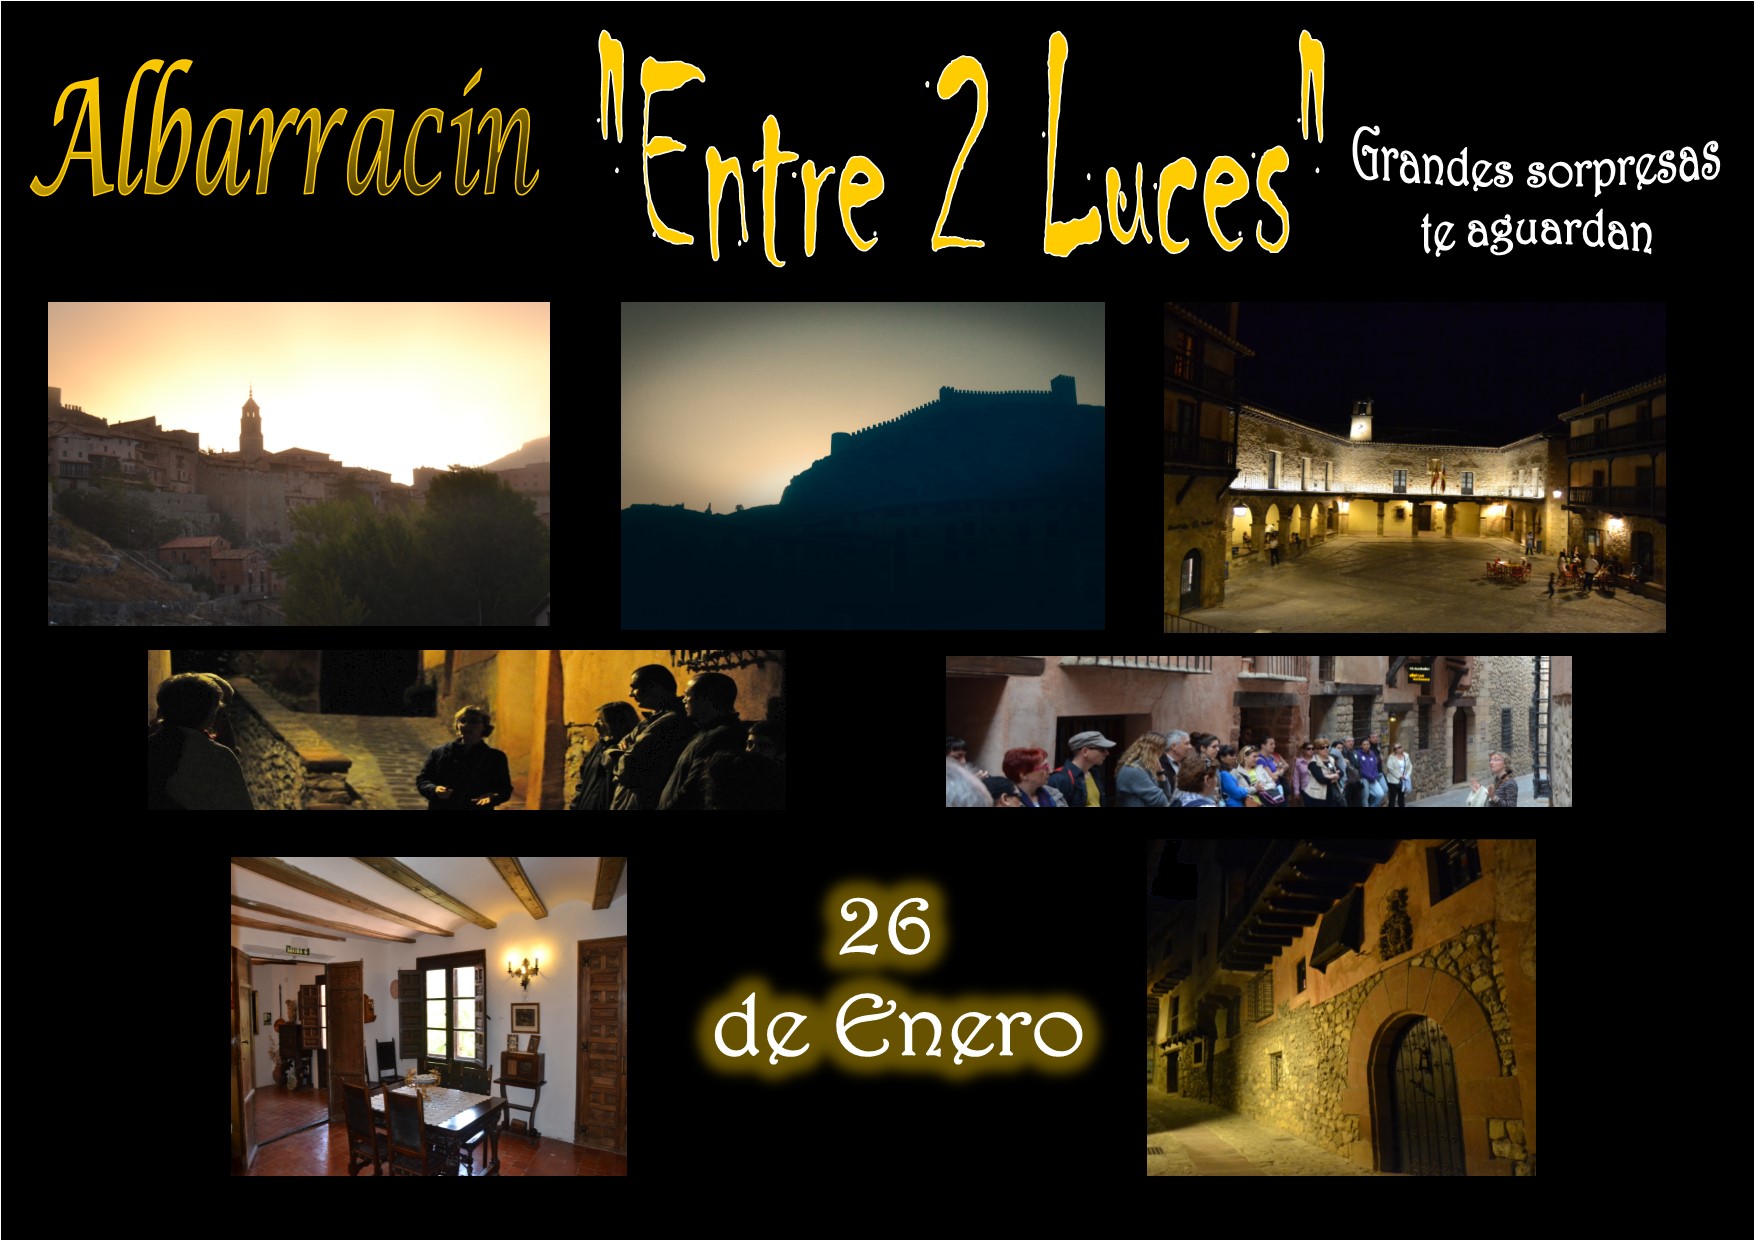 Este Sábado 26 de Enero…Albarracín Entre 2 Luces ….con sorpresas durante la visita!